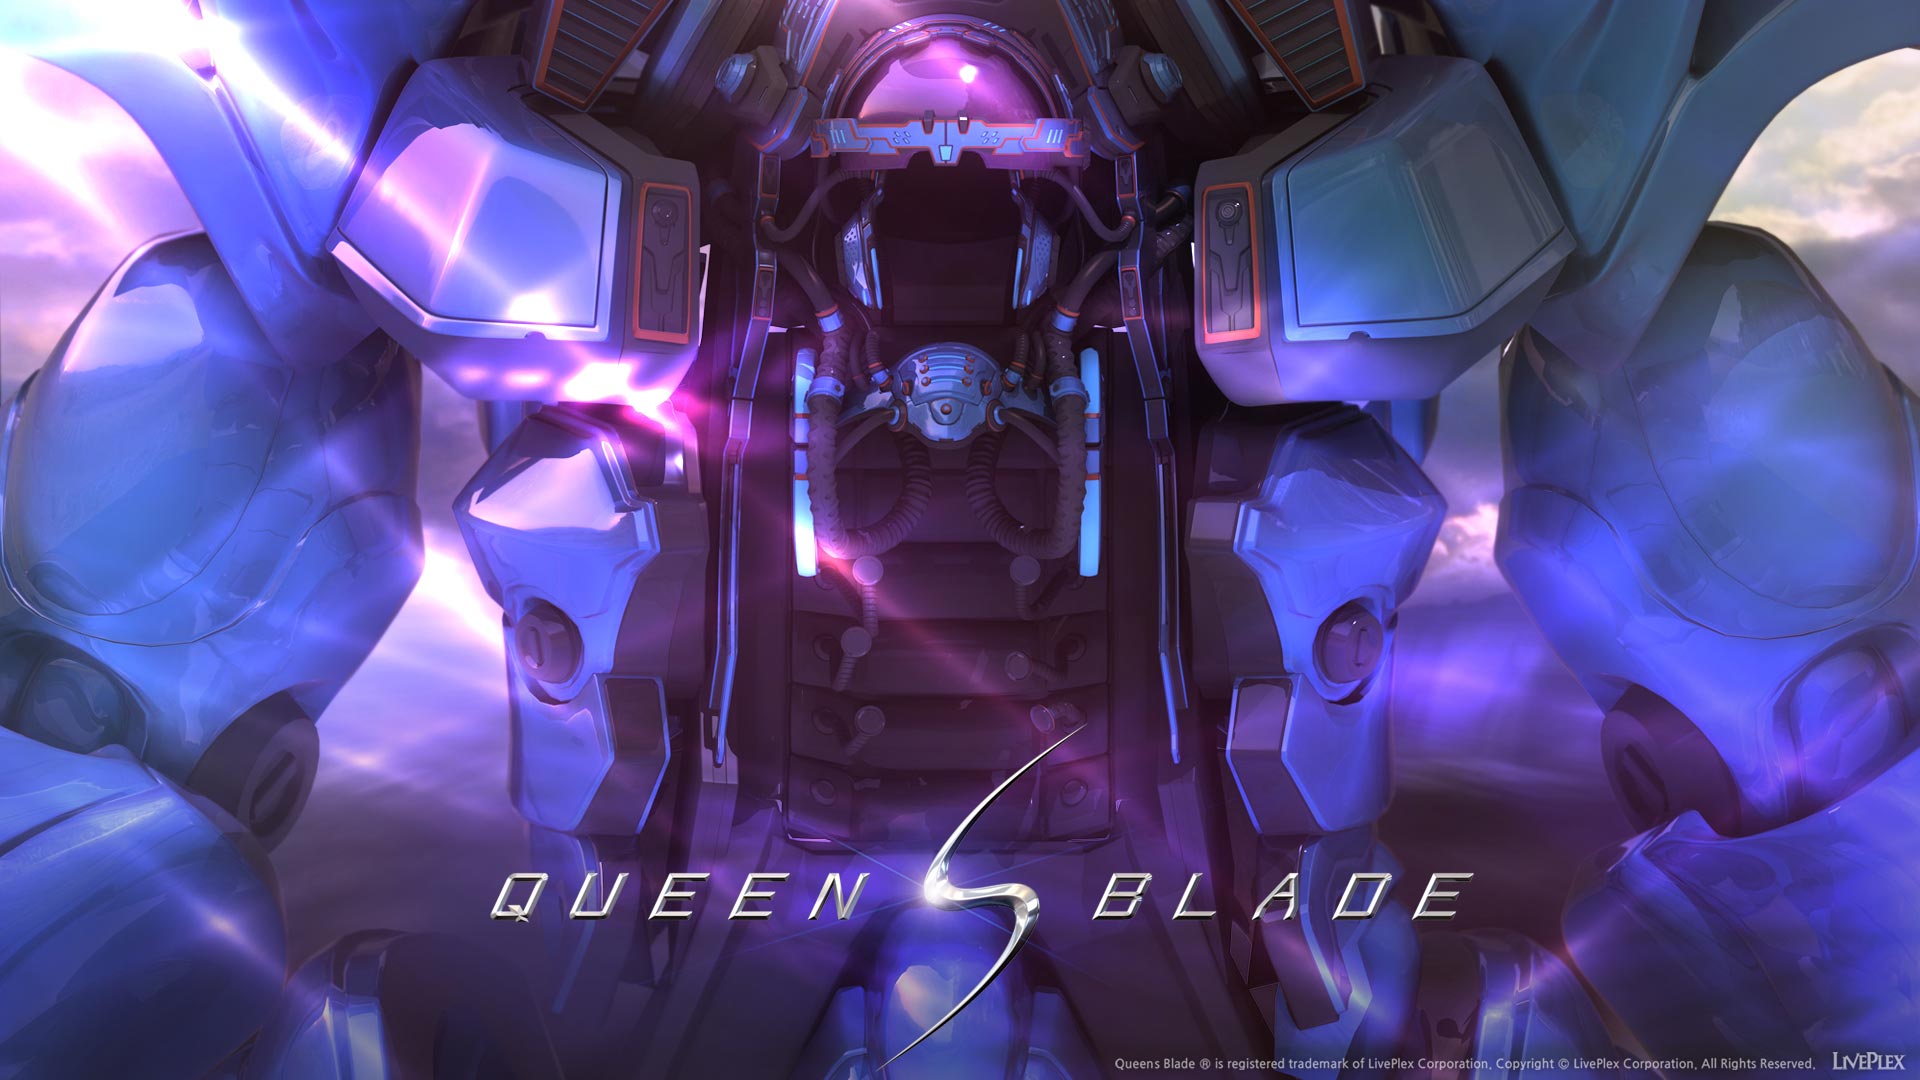 Queen Blade Wallpaper hd images